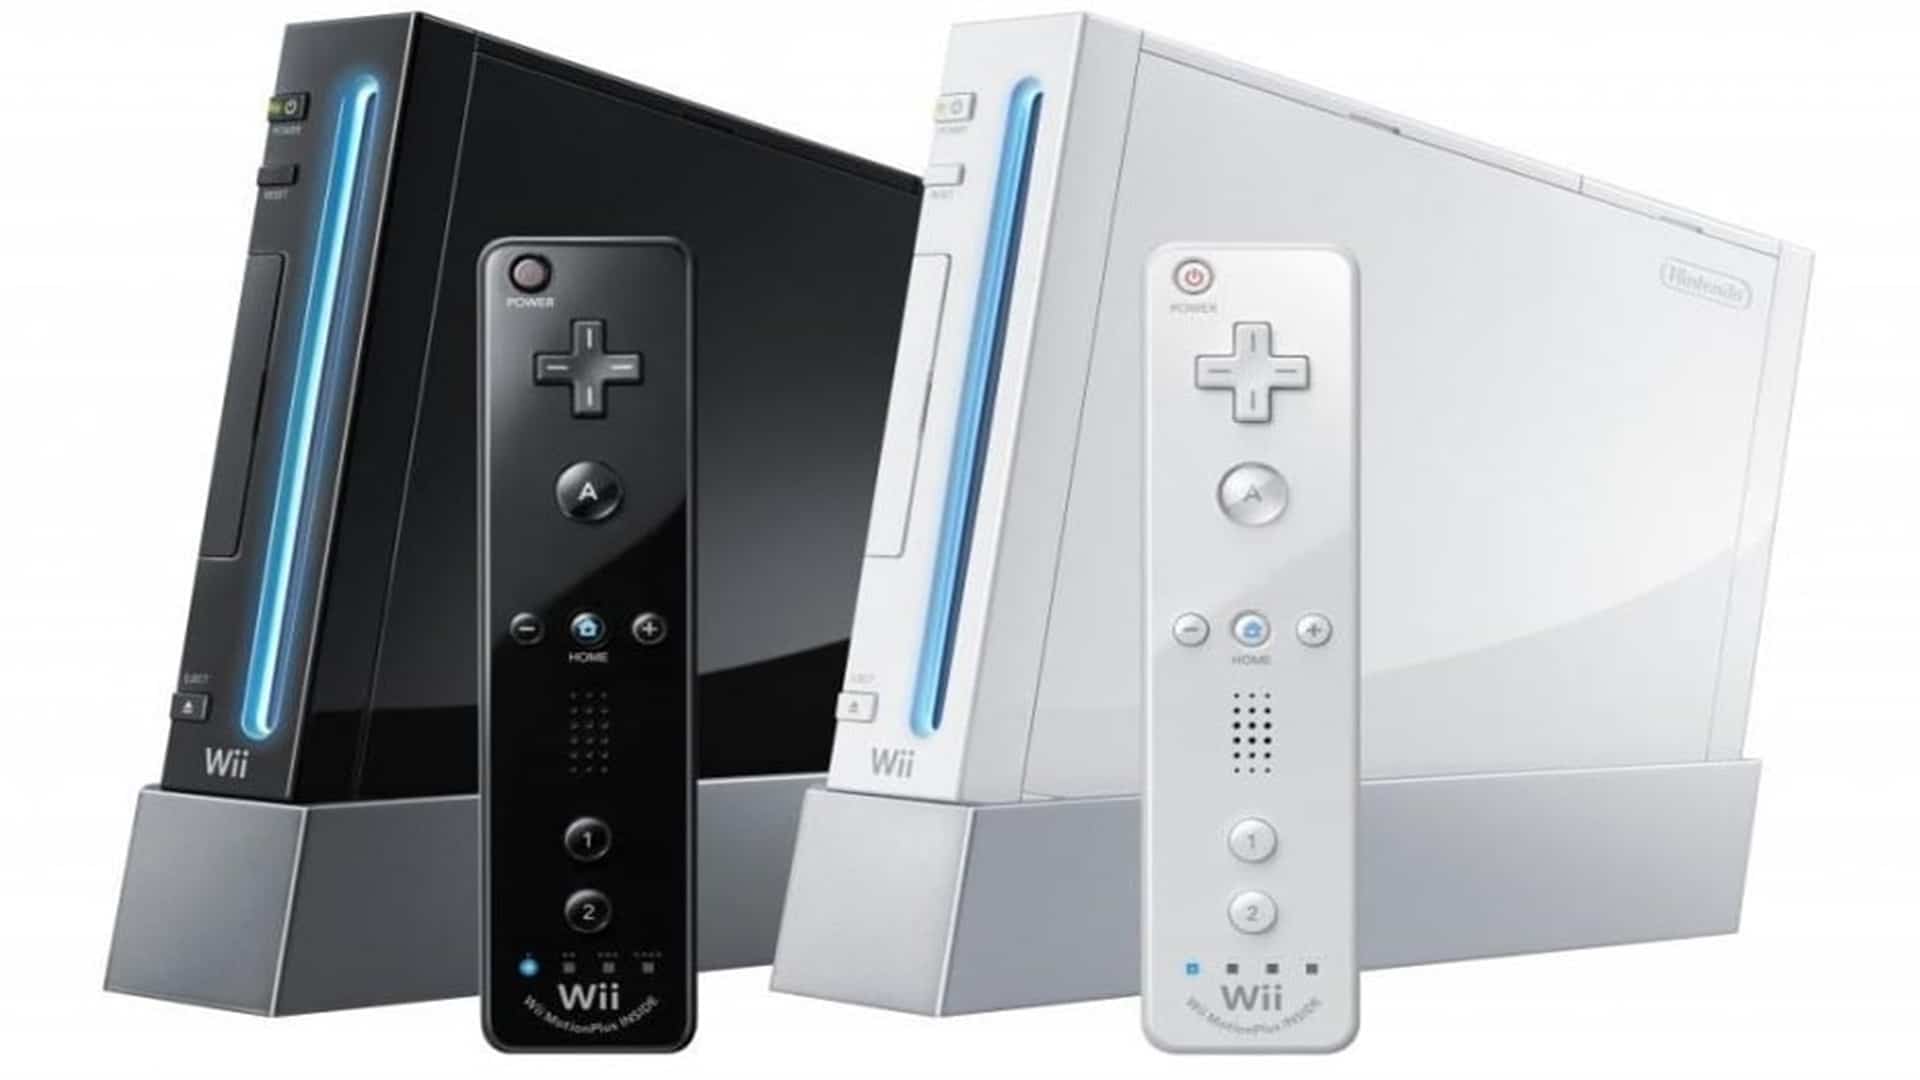 Top 7 mejores juegos de Nintendo Wii, GamersRD